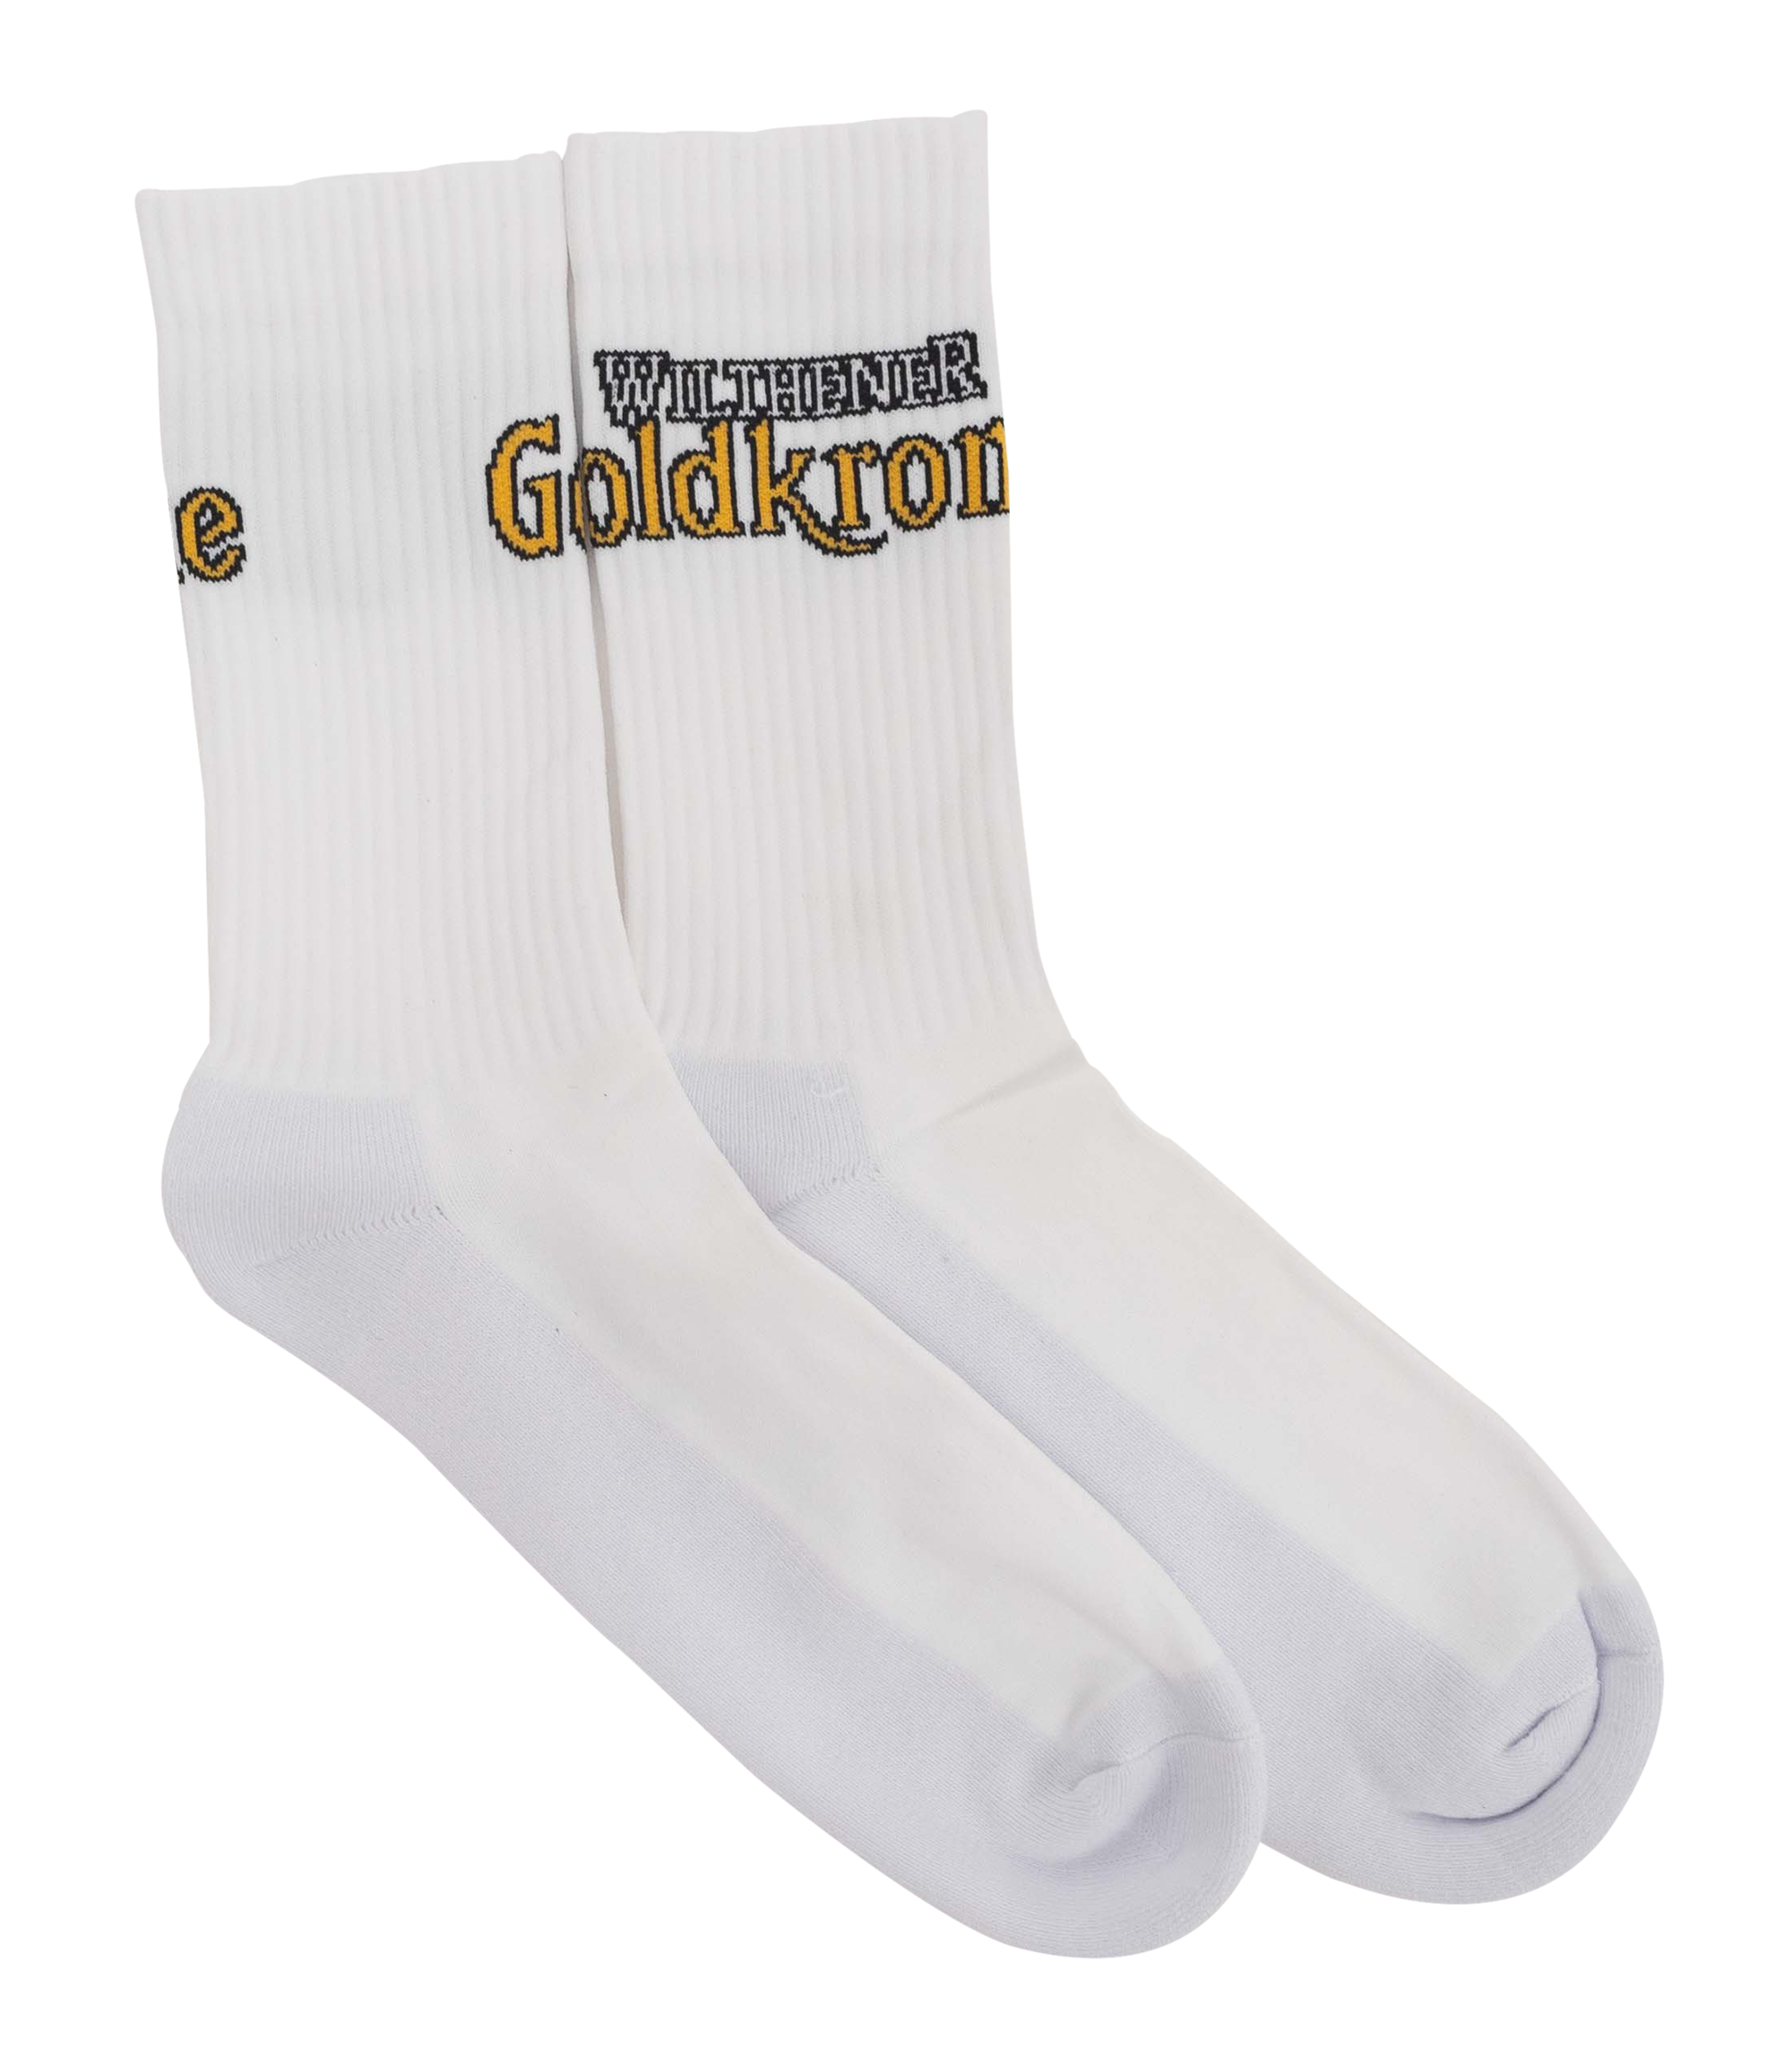 Wilthener Goldkrone Socken Logo seitlich Gr. 38-40